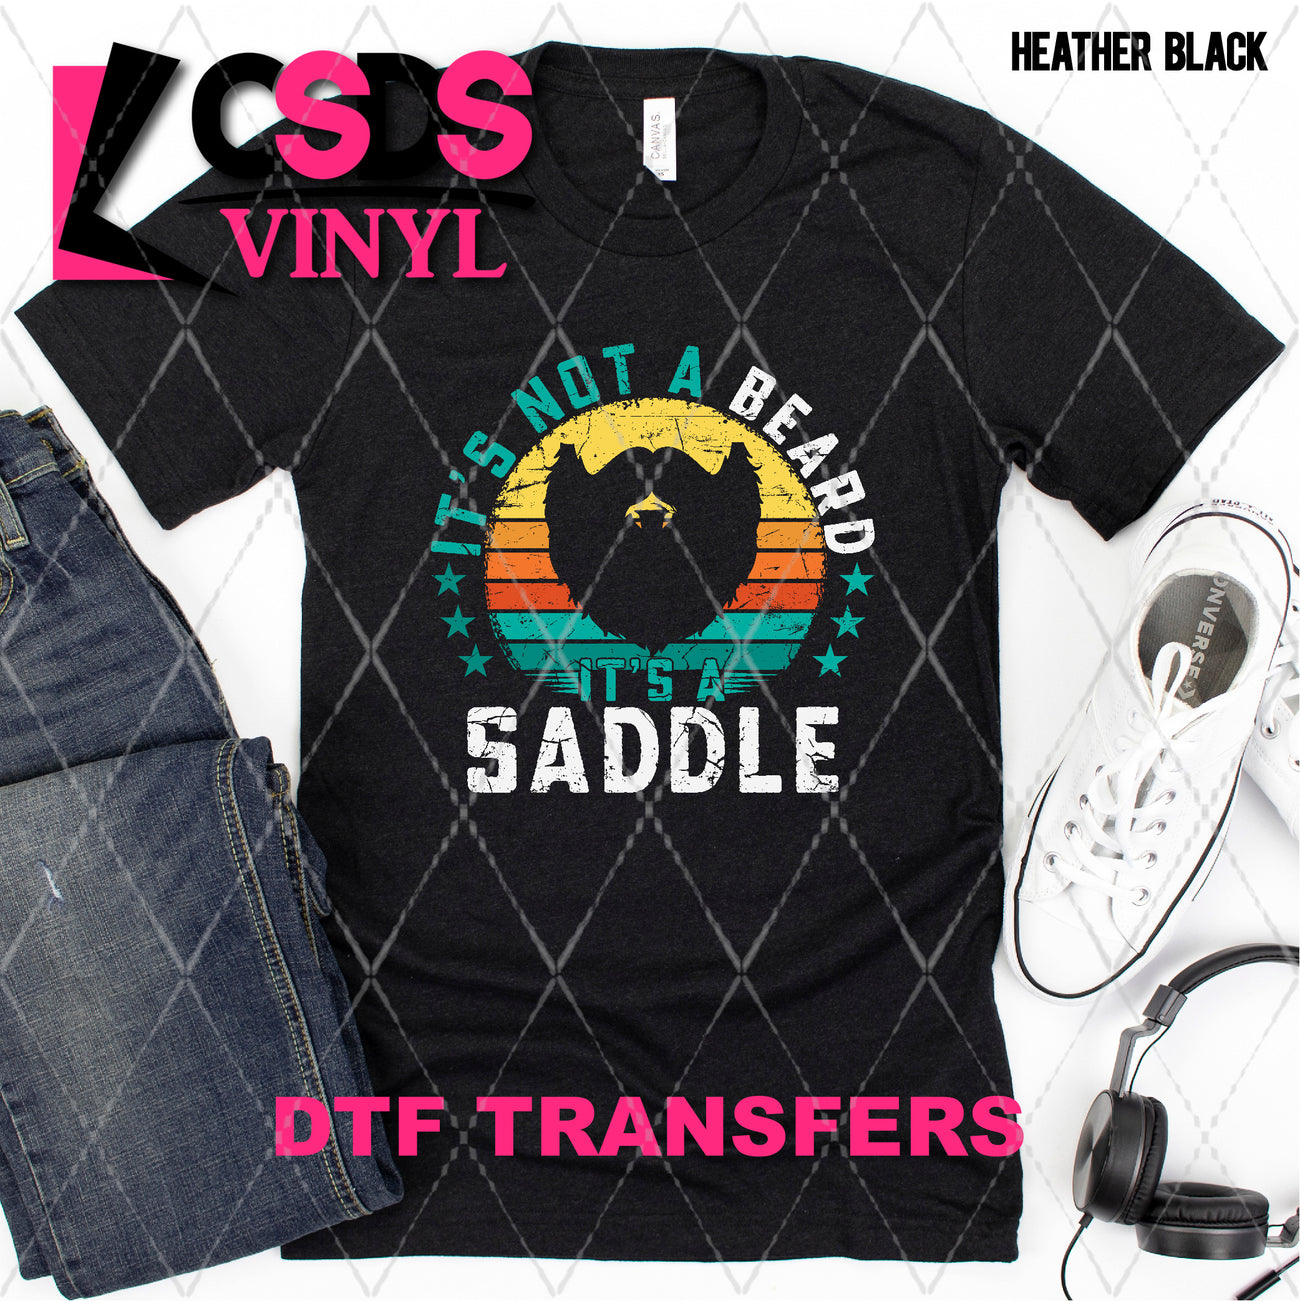 DTF Transfer - DTF007969 It's Not a Beard – CSDS Vinyl